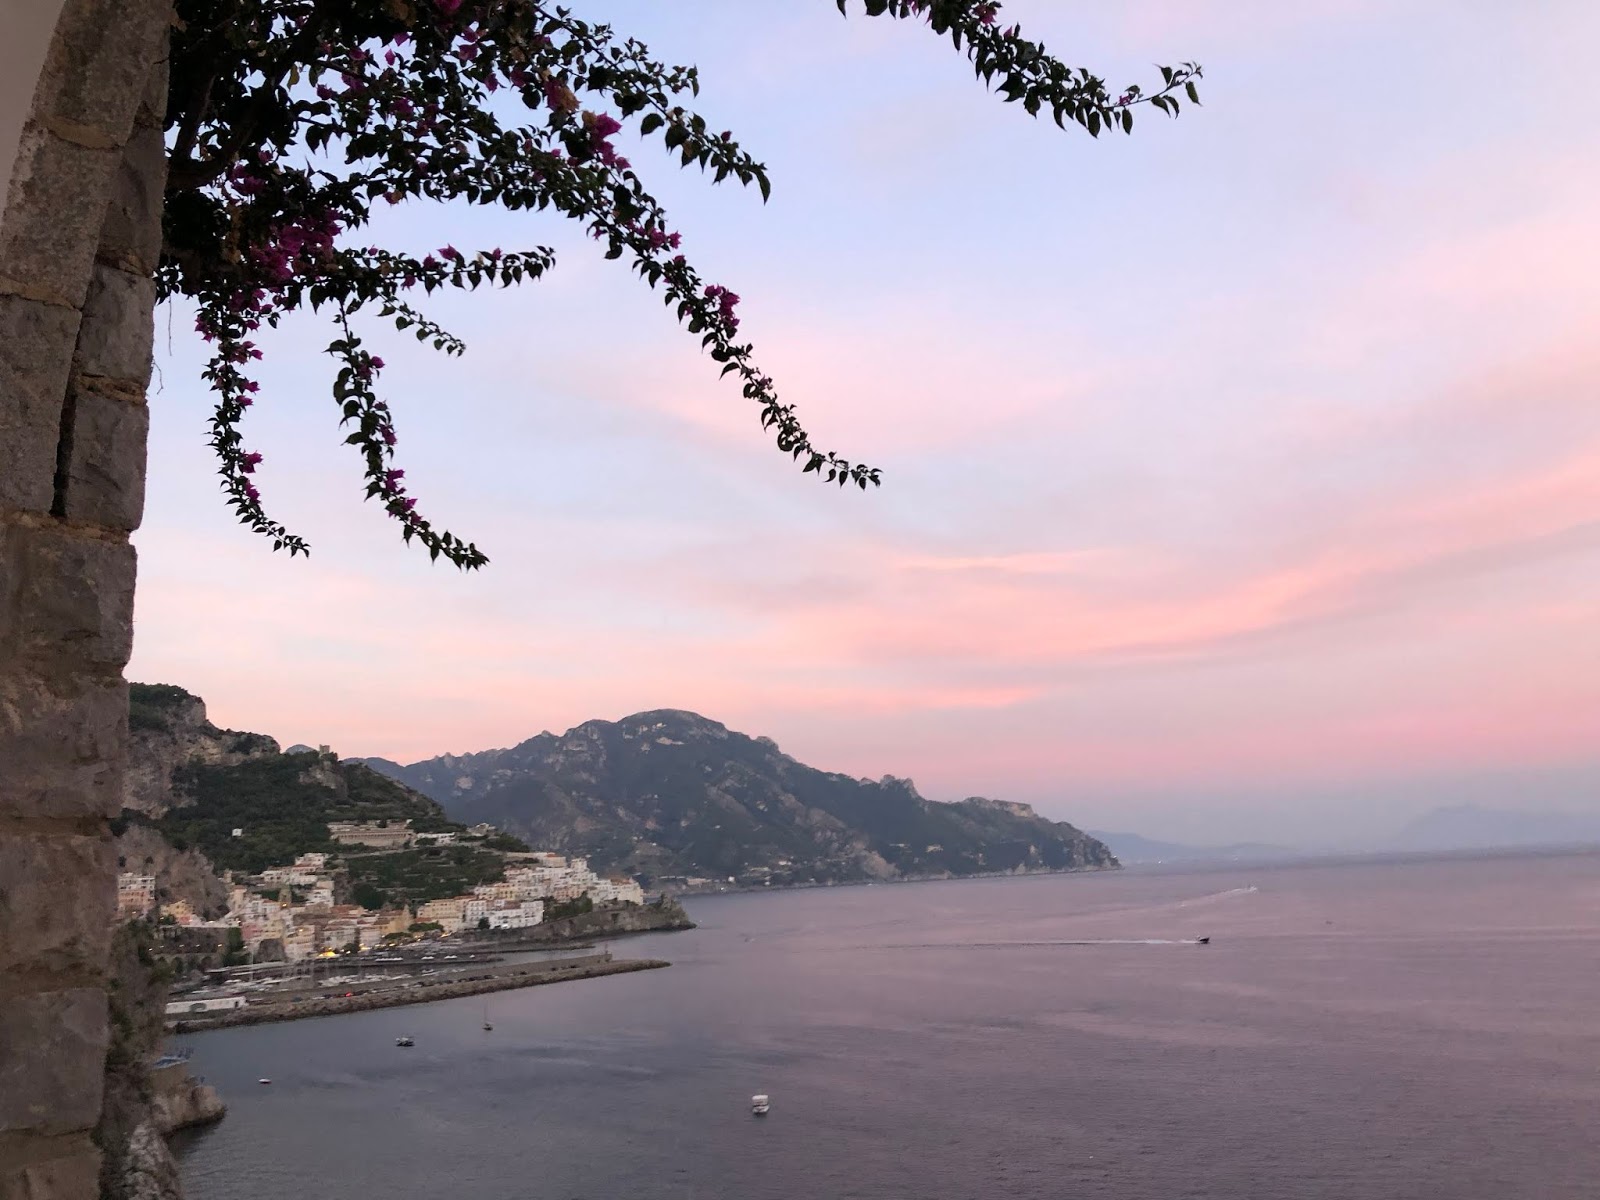 Travel // Hotel Santa Caterina & Amalfi, Italy - Roses and Rolltops